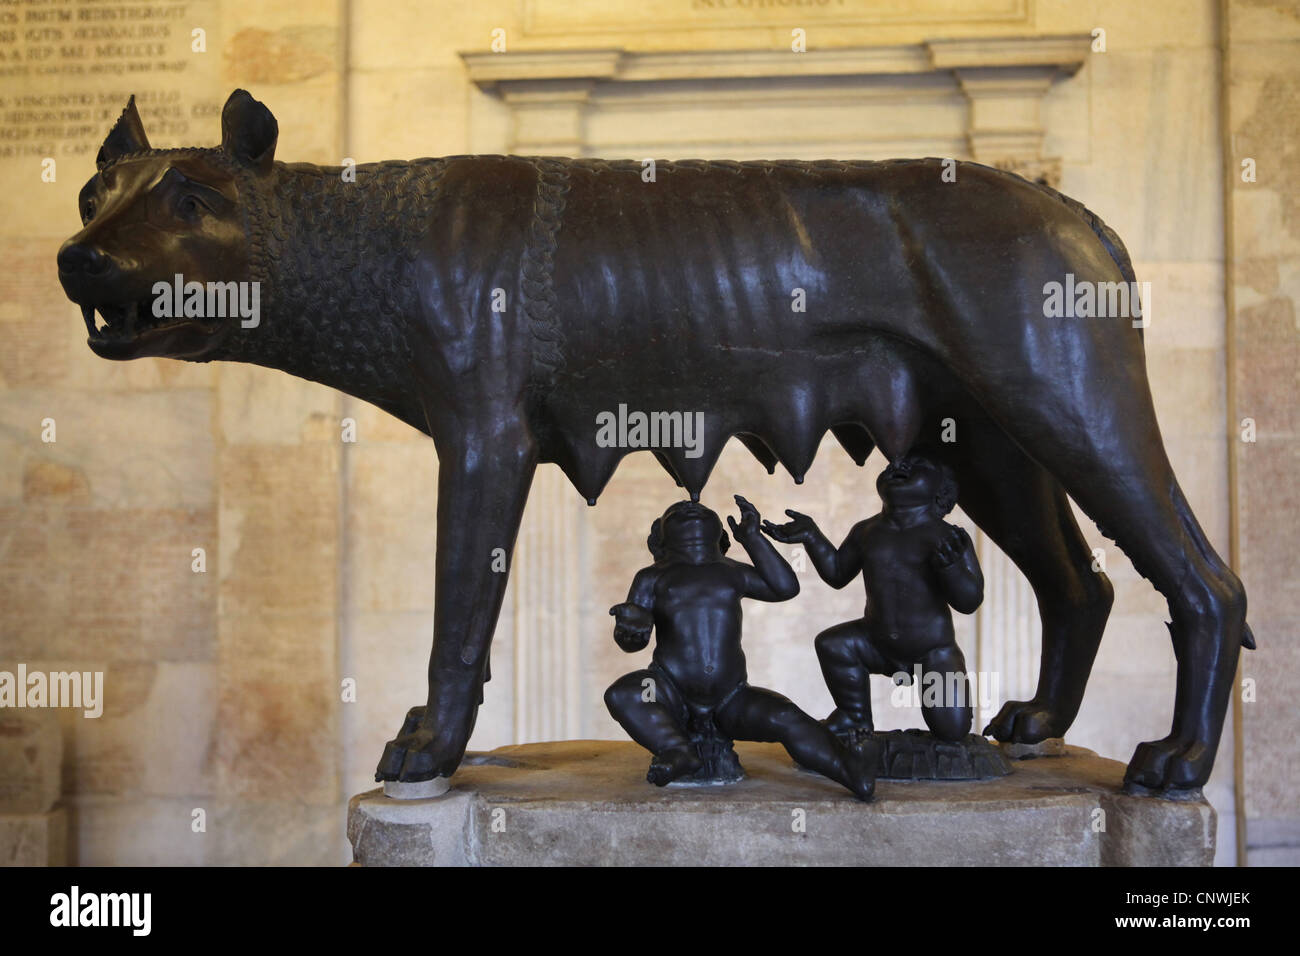 Le loup dans le Capitole, les musées du Capitole à Rome, Italie. Banque D'Images